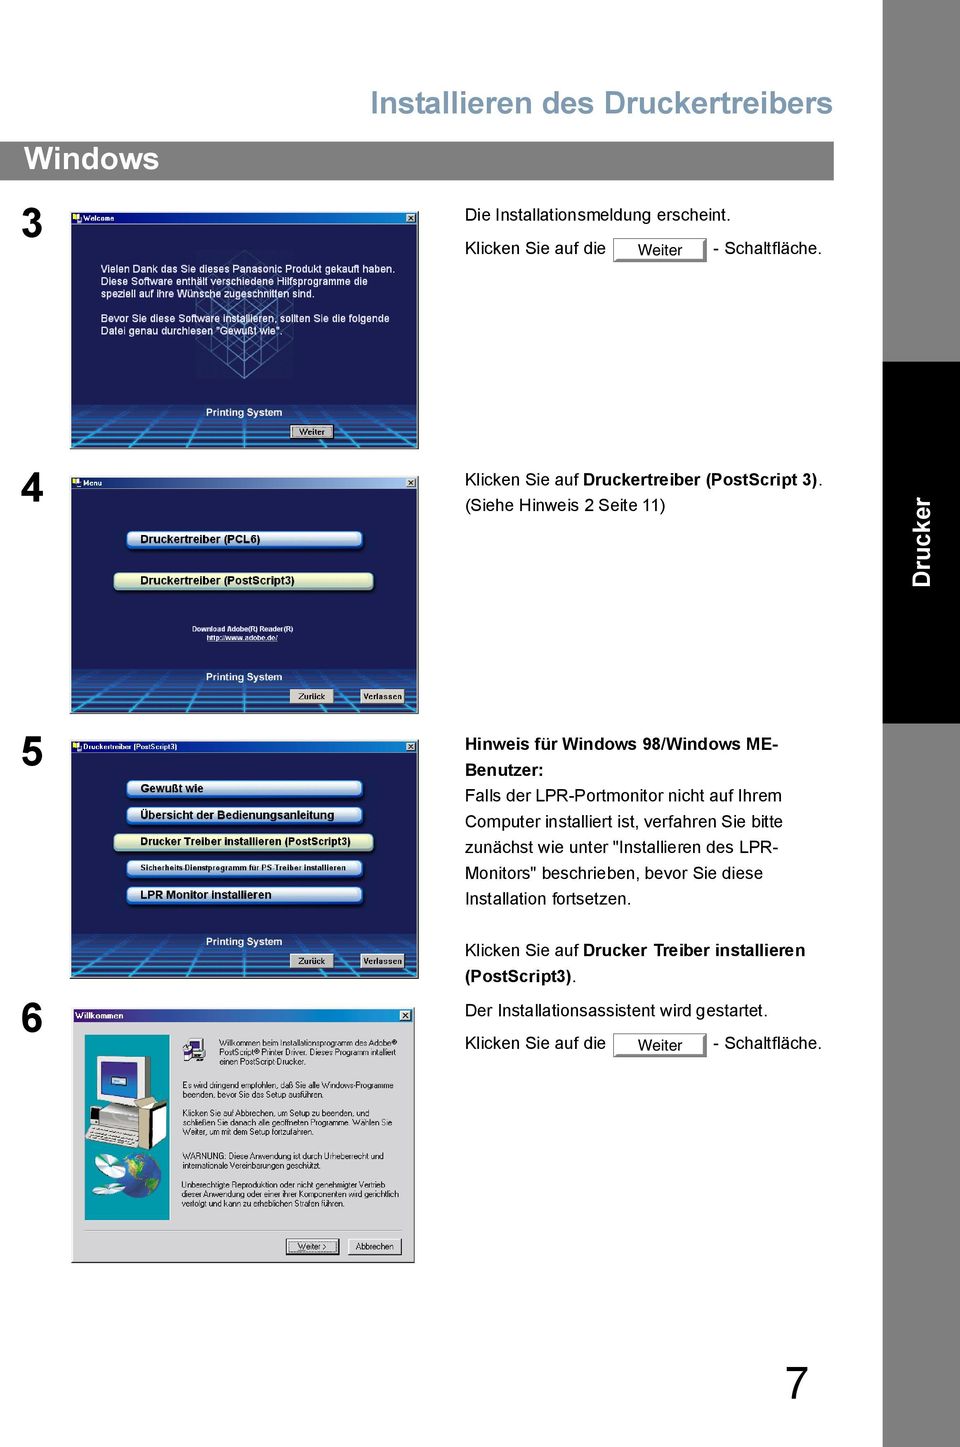 (Siehe Hinweis 2 Seite 11) Drucker Hinweis für Windows 98/Windows ME- 5 Benutzer: Falls der LPR-Portmonitor nicht auf Ihrem Computer installiert